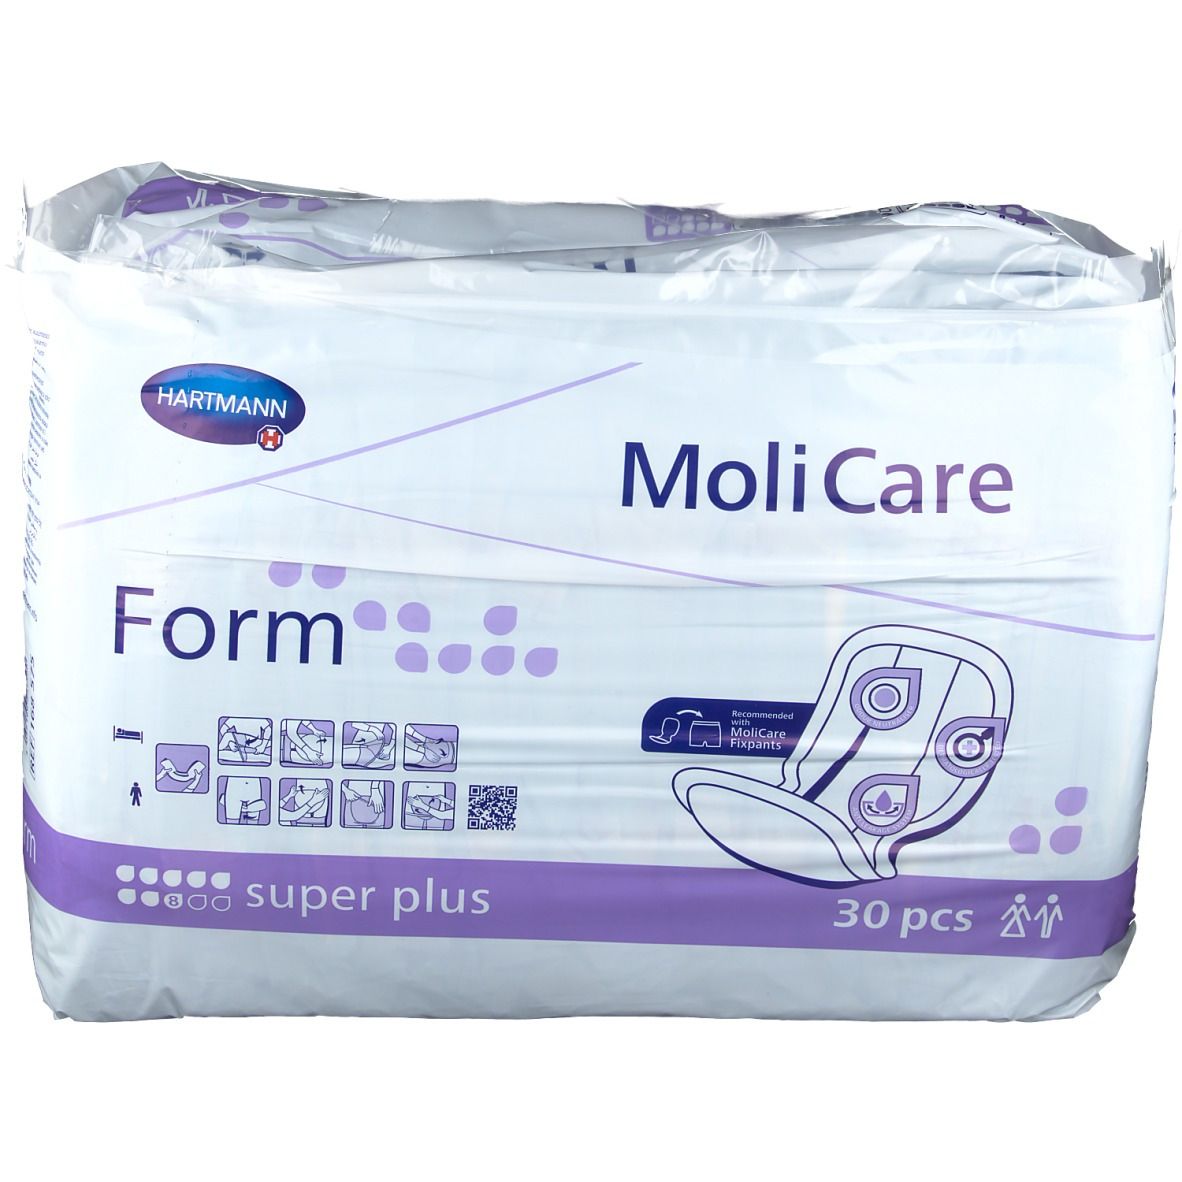 MoliCare® Form super plus 30 pc(s) - shop-apotheke.ch